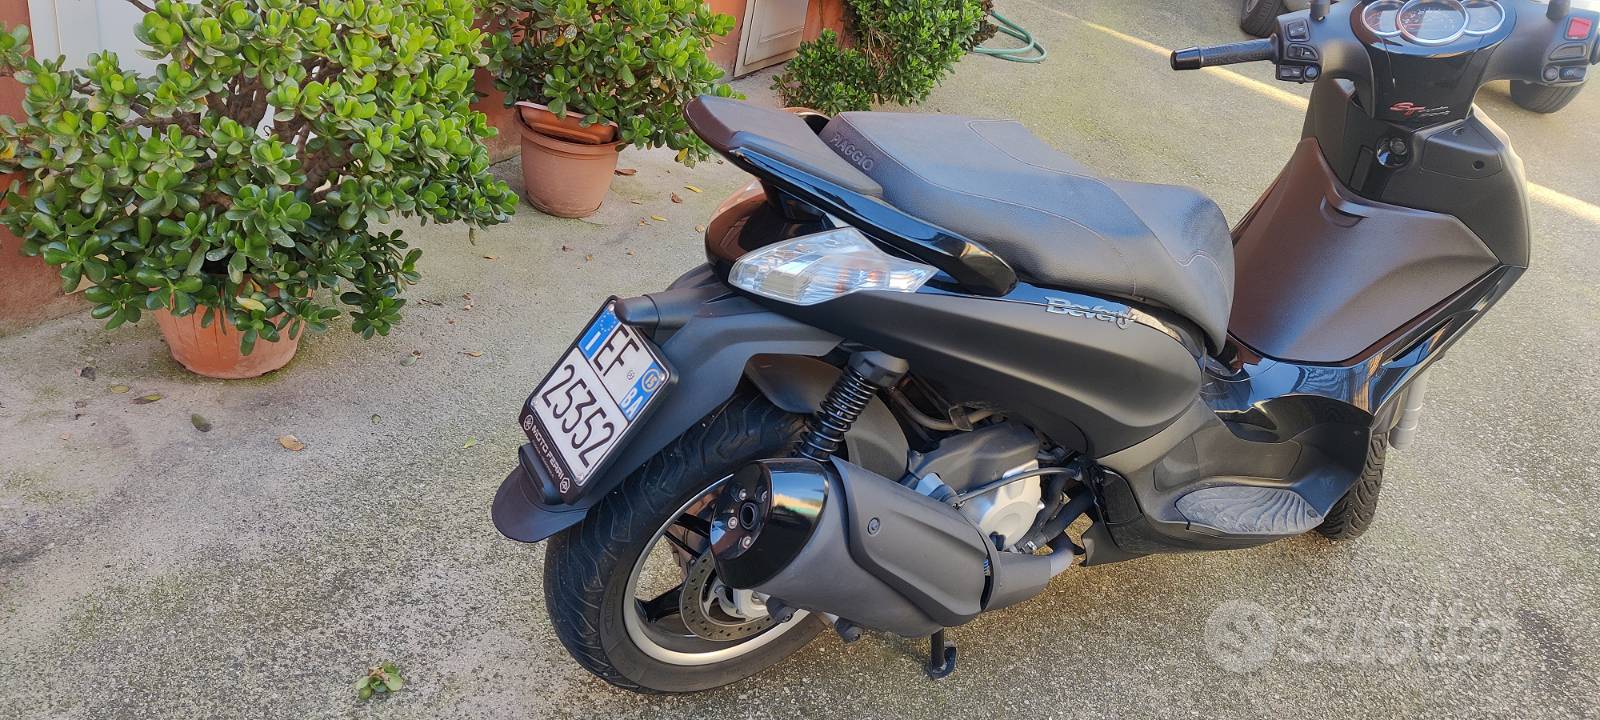 Piaggio Beverly 350 perfetto - Moto e Scooter In vendita a Foggia